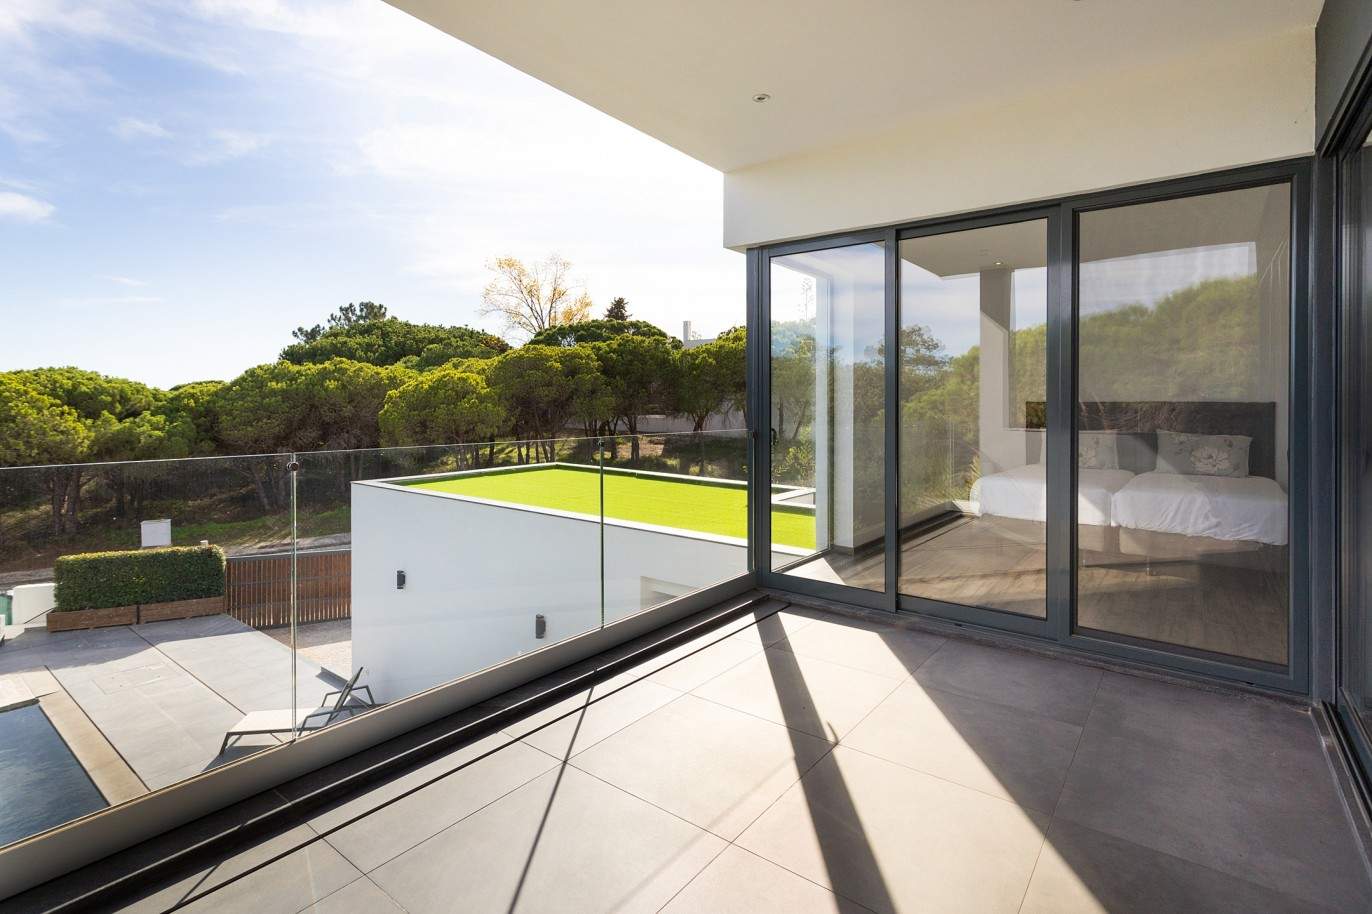 4 Bedroom Villa with swimming pool for sale in Vale do Lobo, Algarve_211204